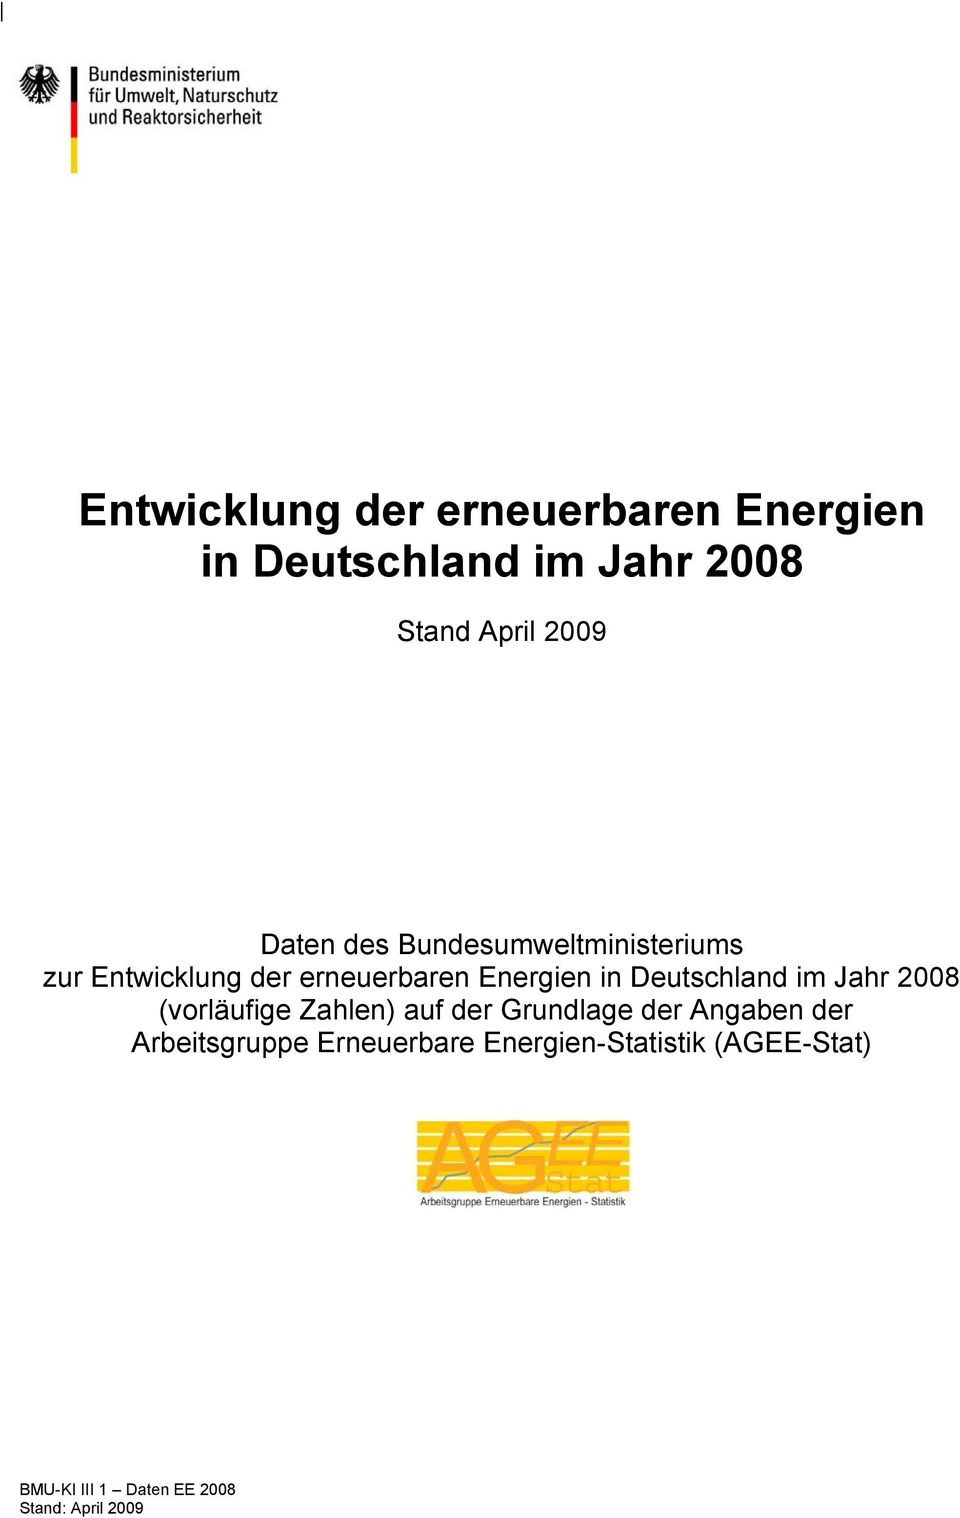 erneuerbaren Energien in Deutschland im Jahr 2008 (vorläufige Zahlen) auf